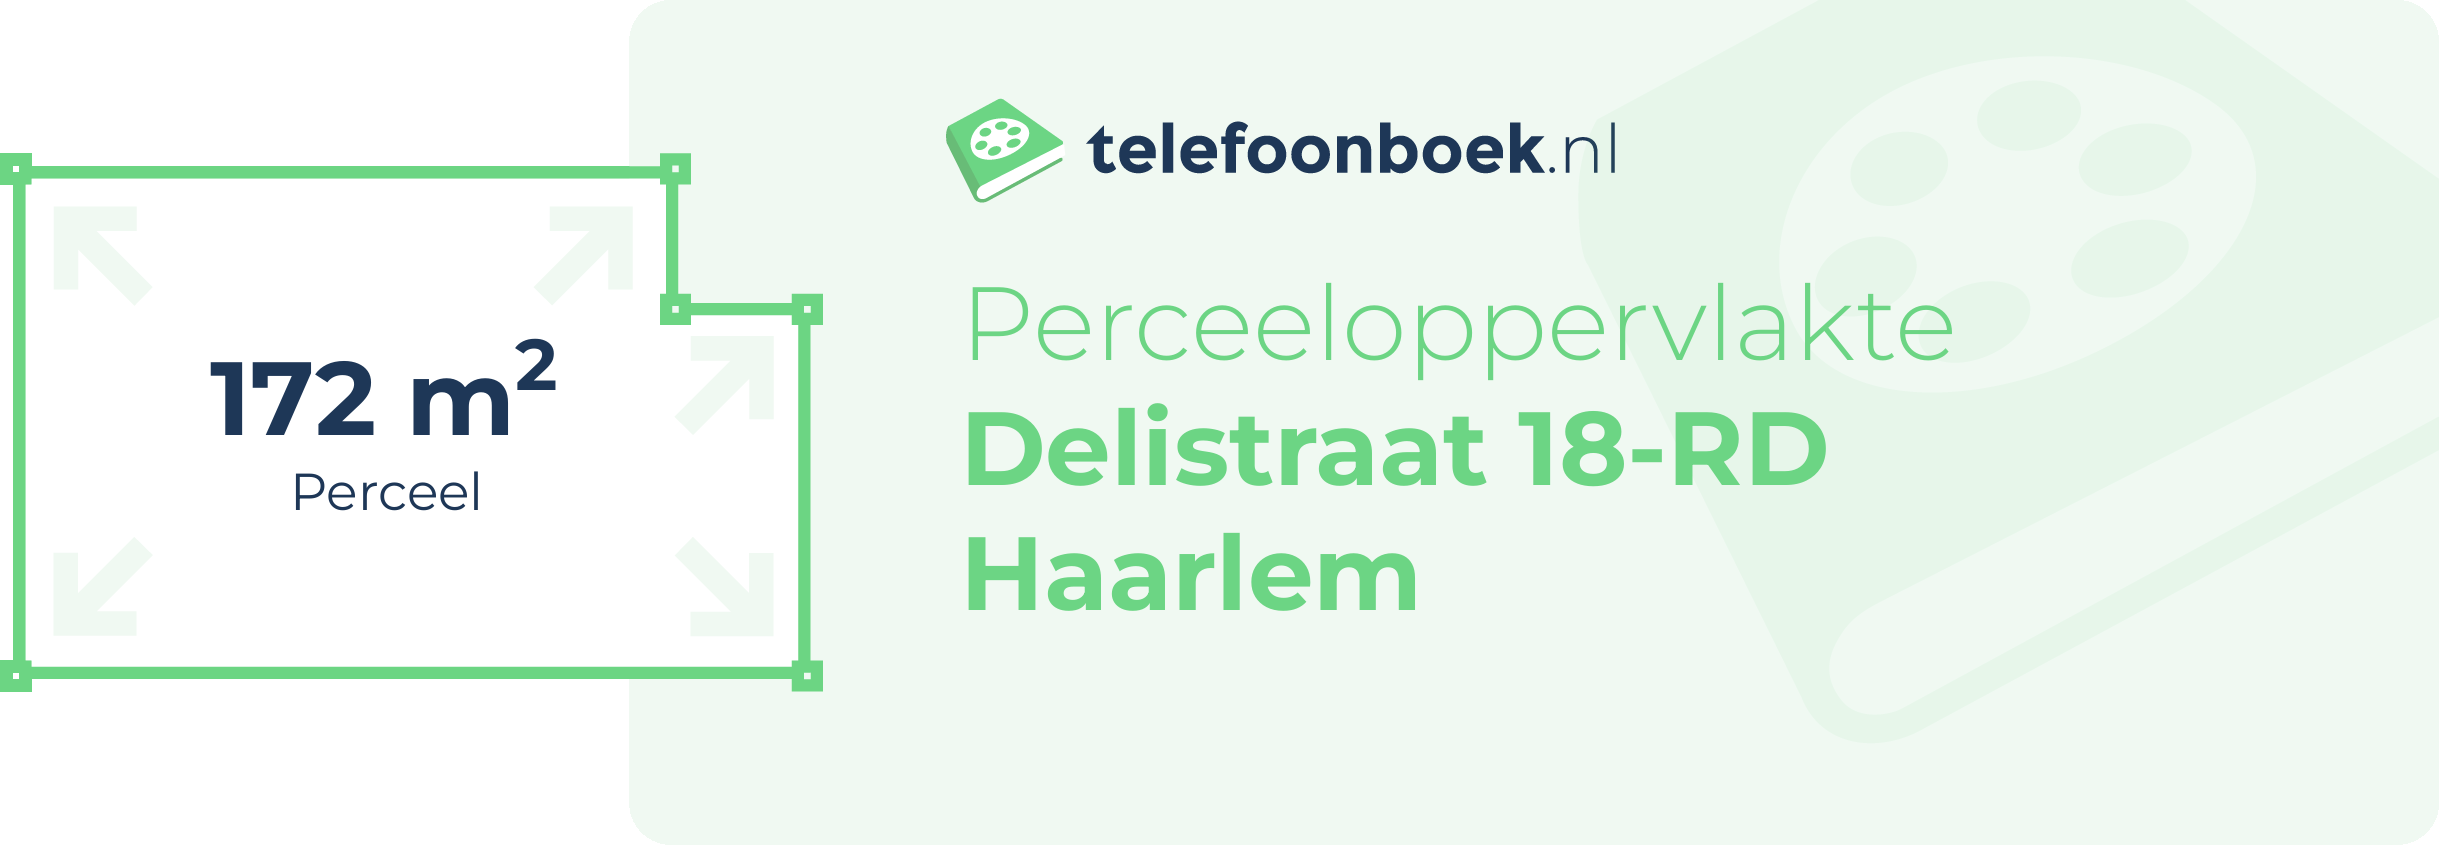 Perceeloppervlakte Delistraat 18-RD Haarlem